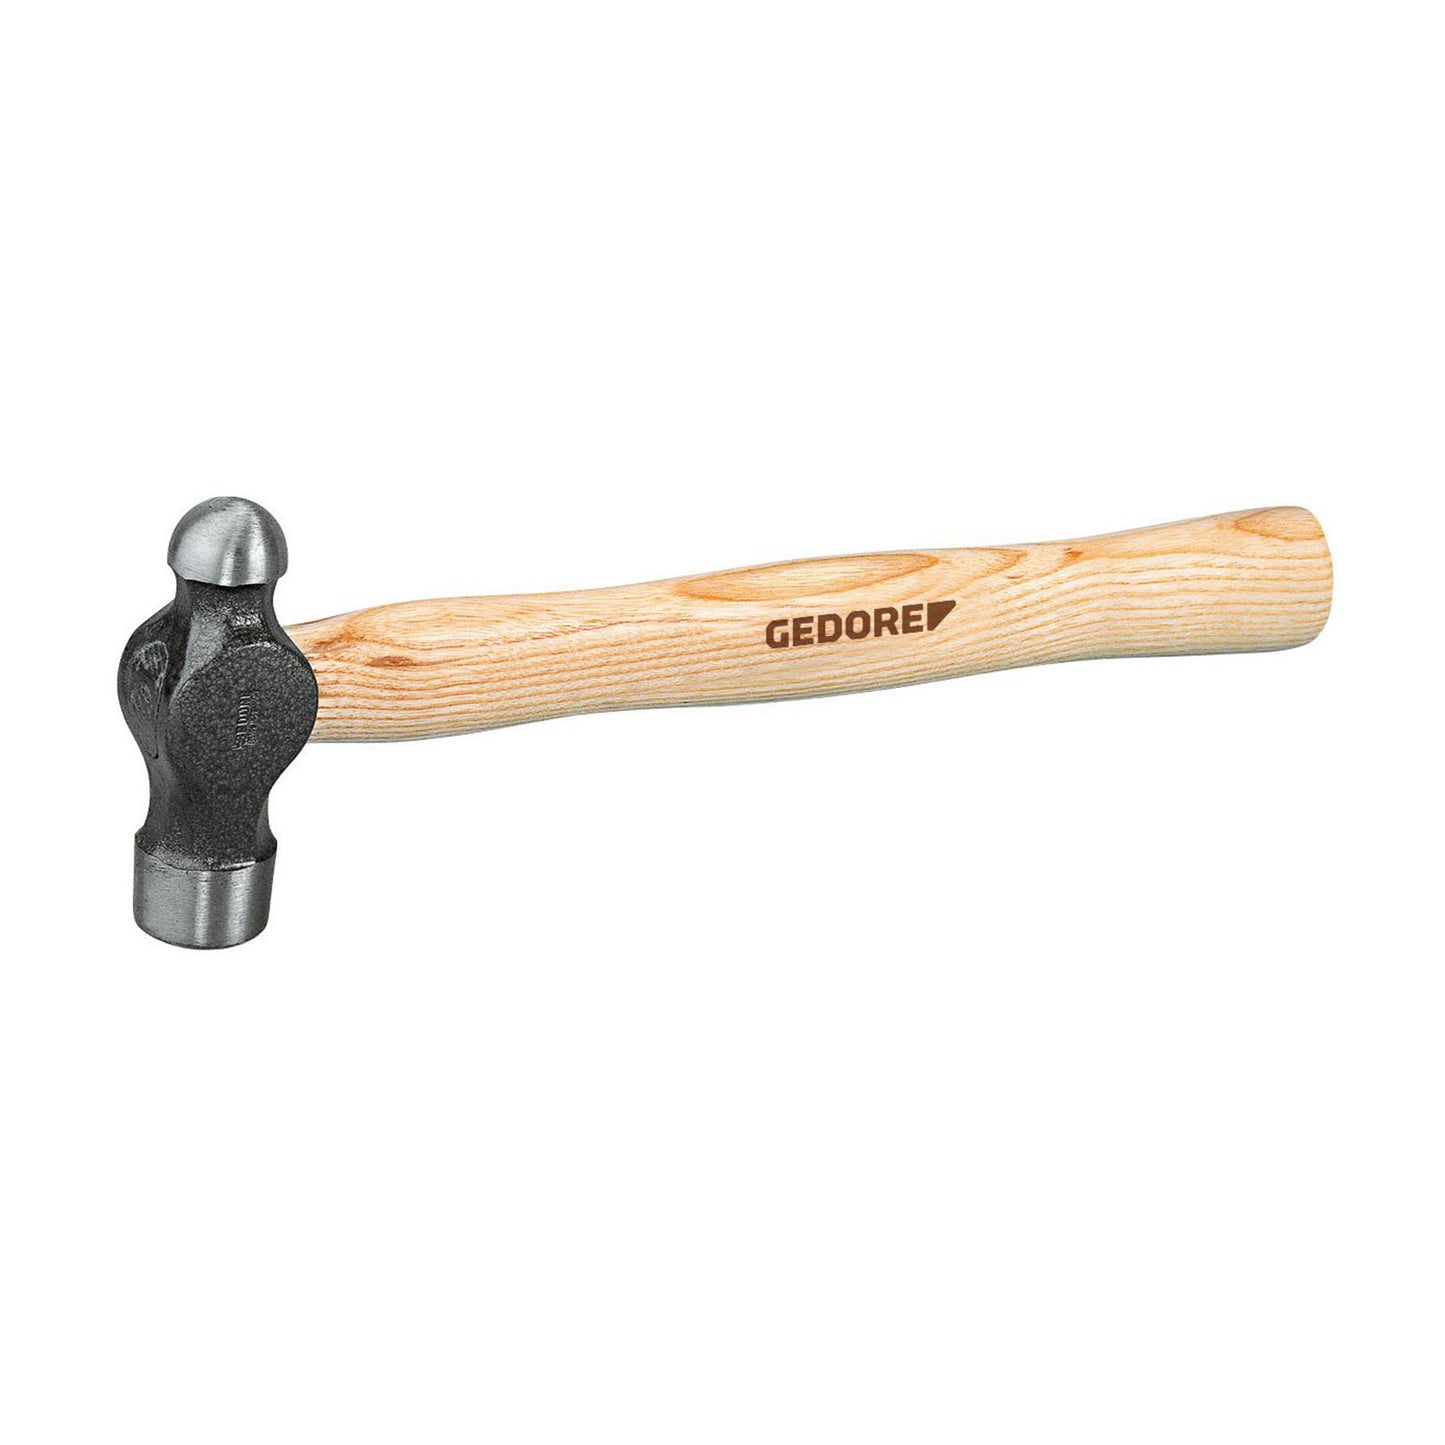 GEDORE 8601 3/4 - Mechanical hammer 3/4LBS (6764380)